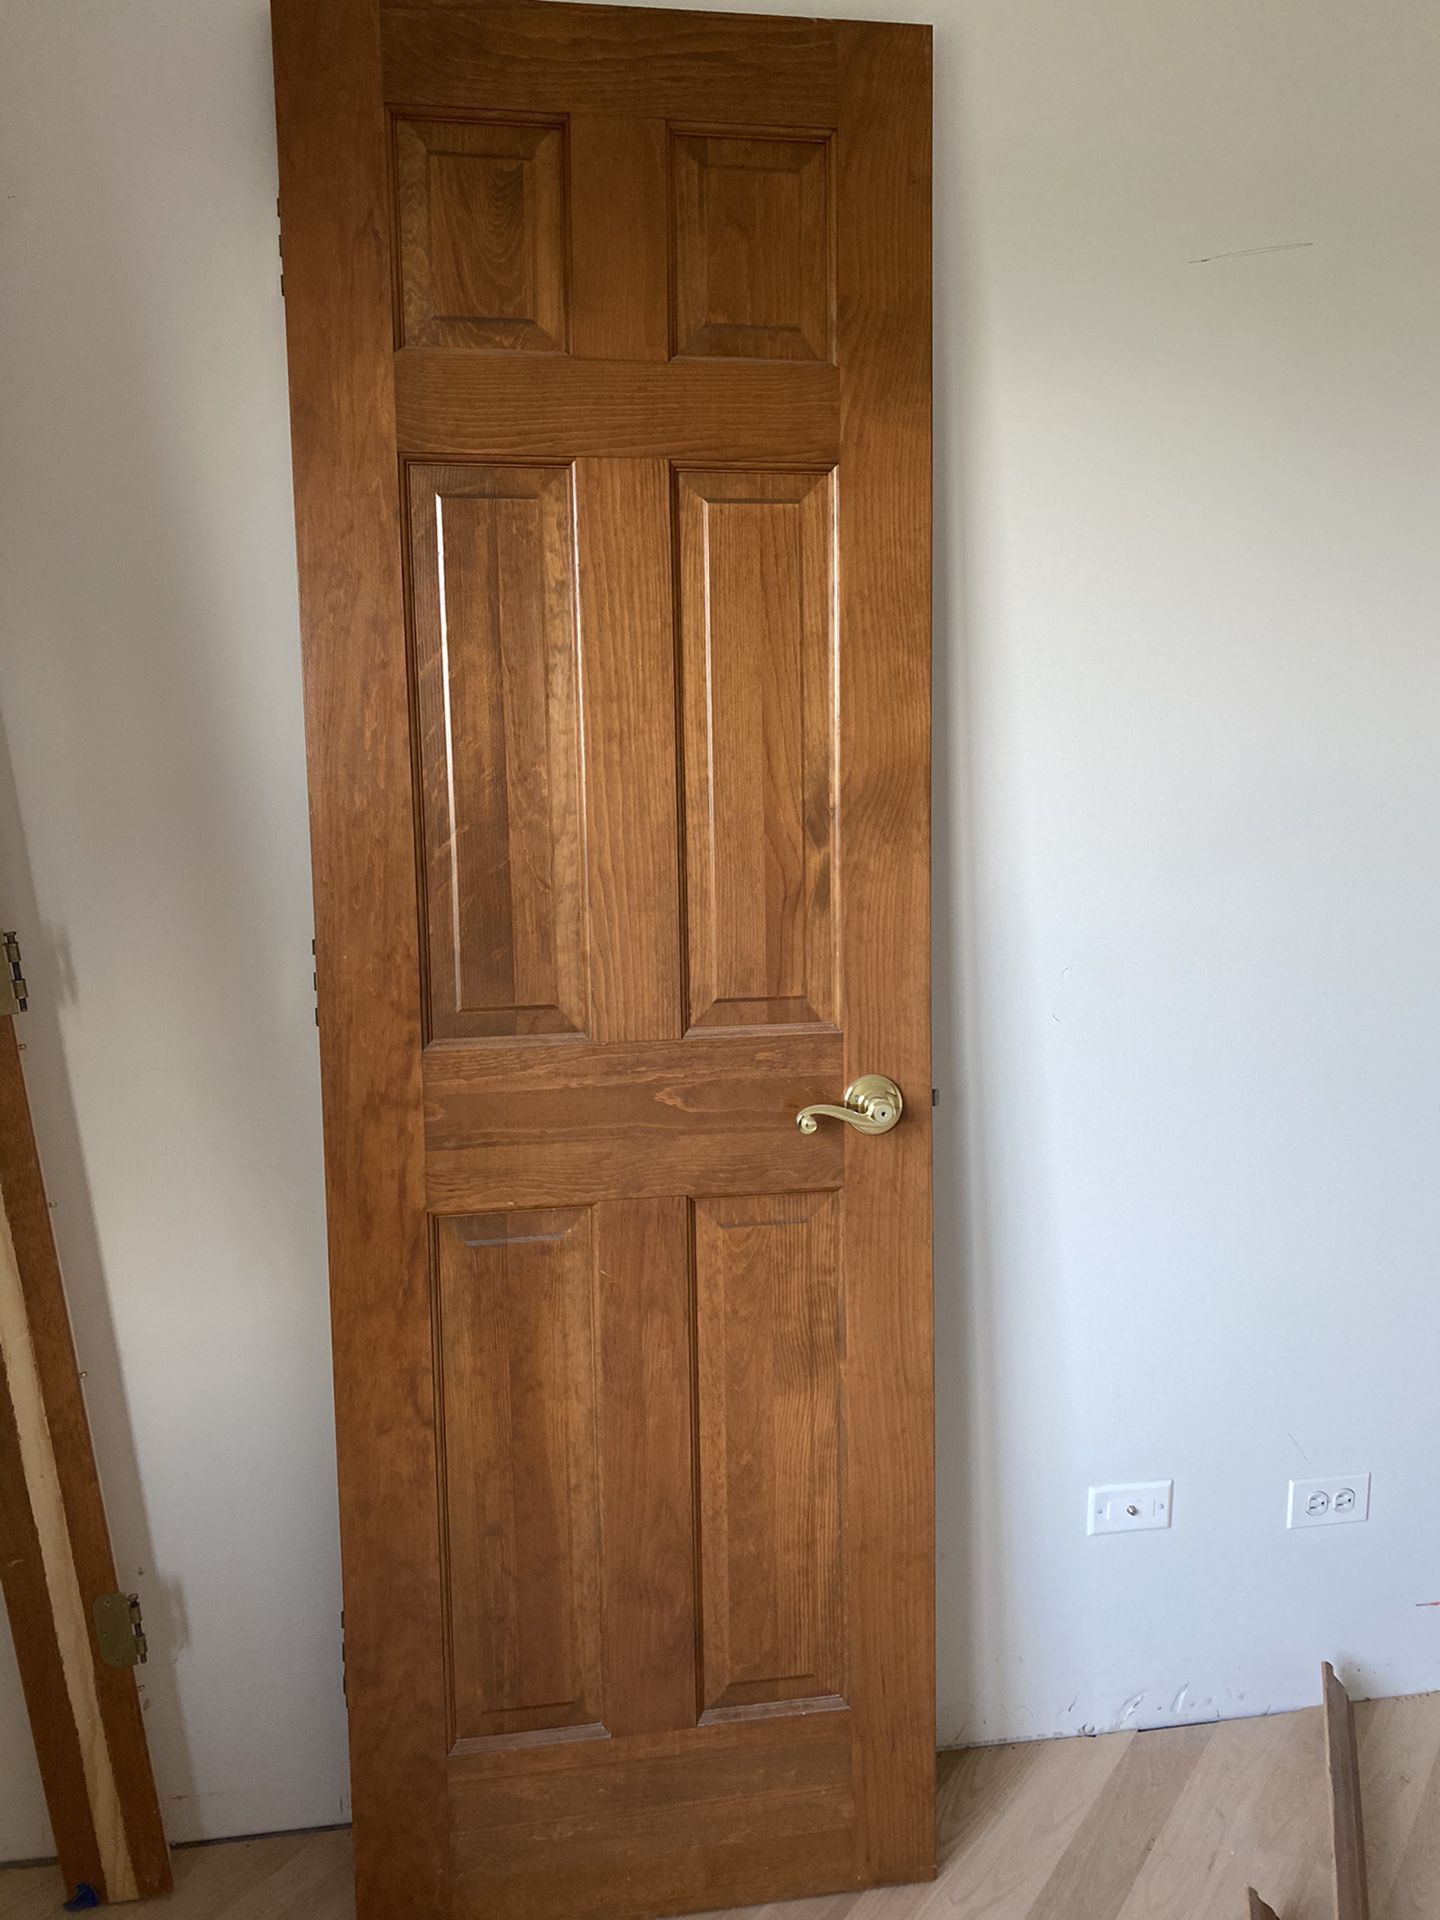 Pine solid core doors